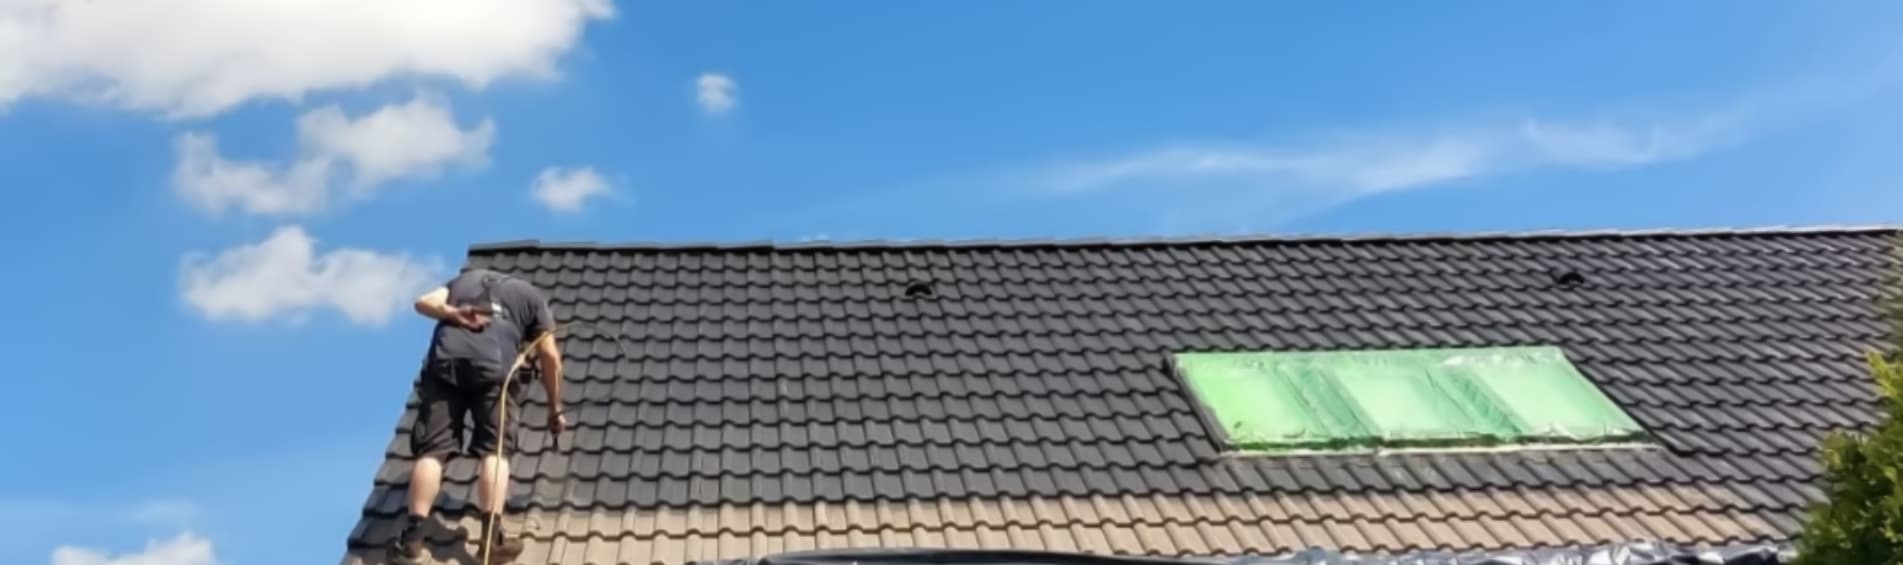 Professionelle Dachreinigung eines mit Dachziegeln gedeckten Satteldaches - Dachreinigung Hamburg